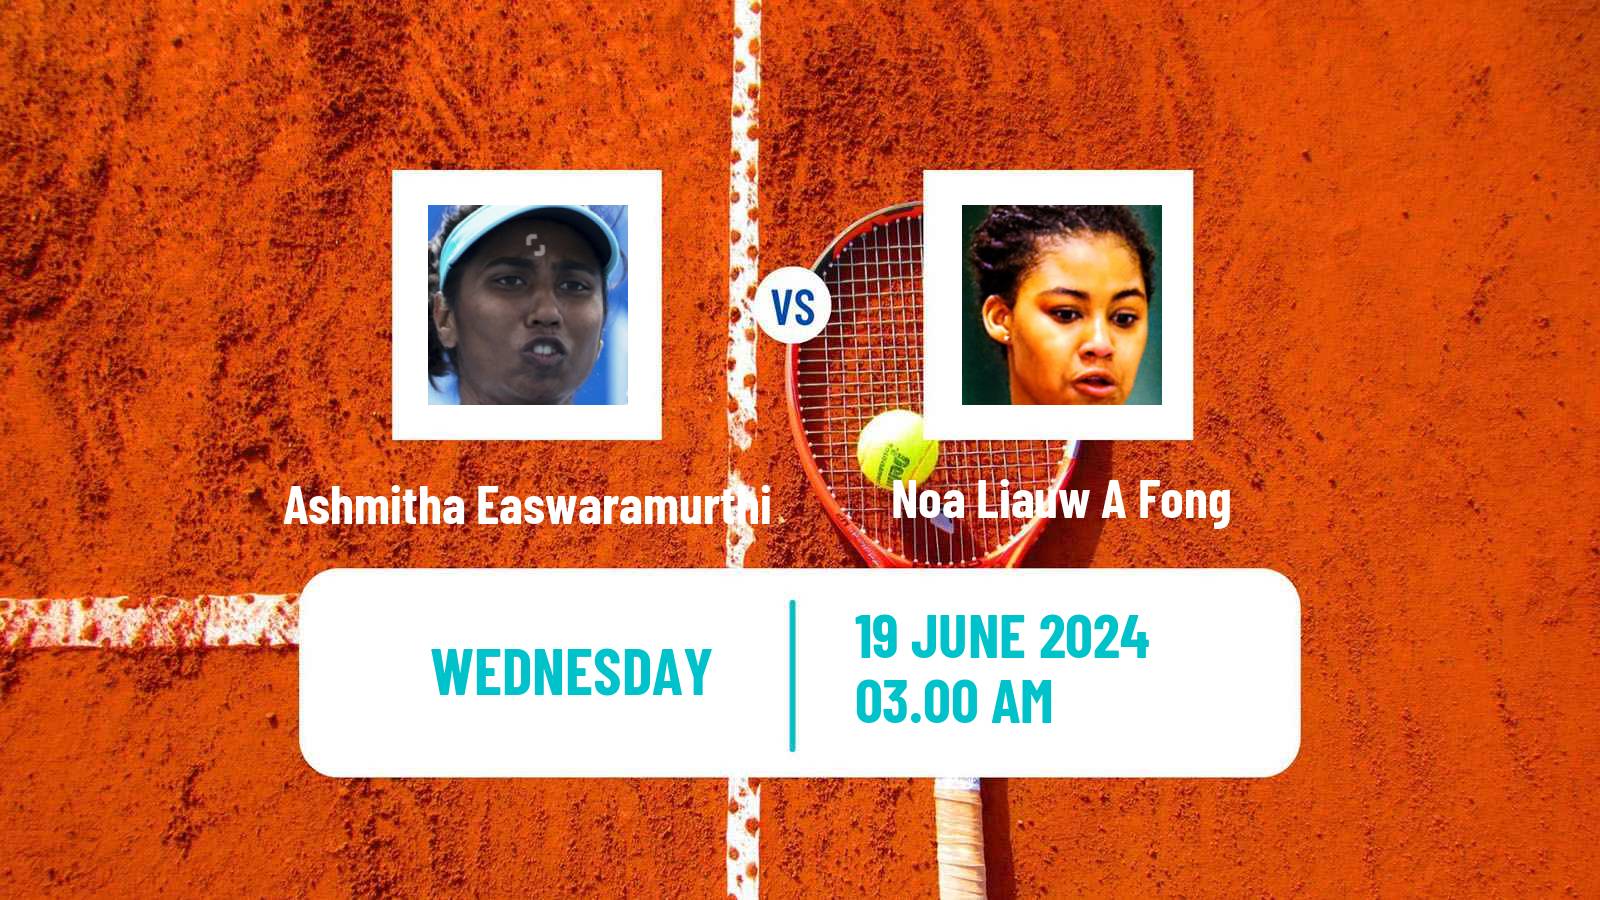 Tennis ITF W15 Hillcrest Women Ashmitha Easwaramurthi - Noa Liauw A Fong